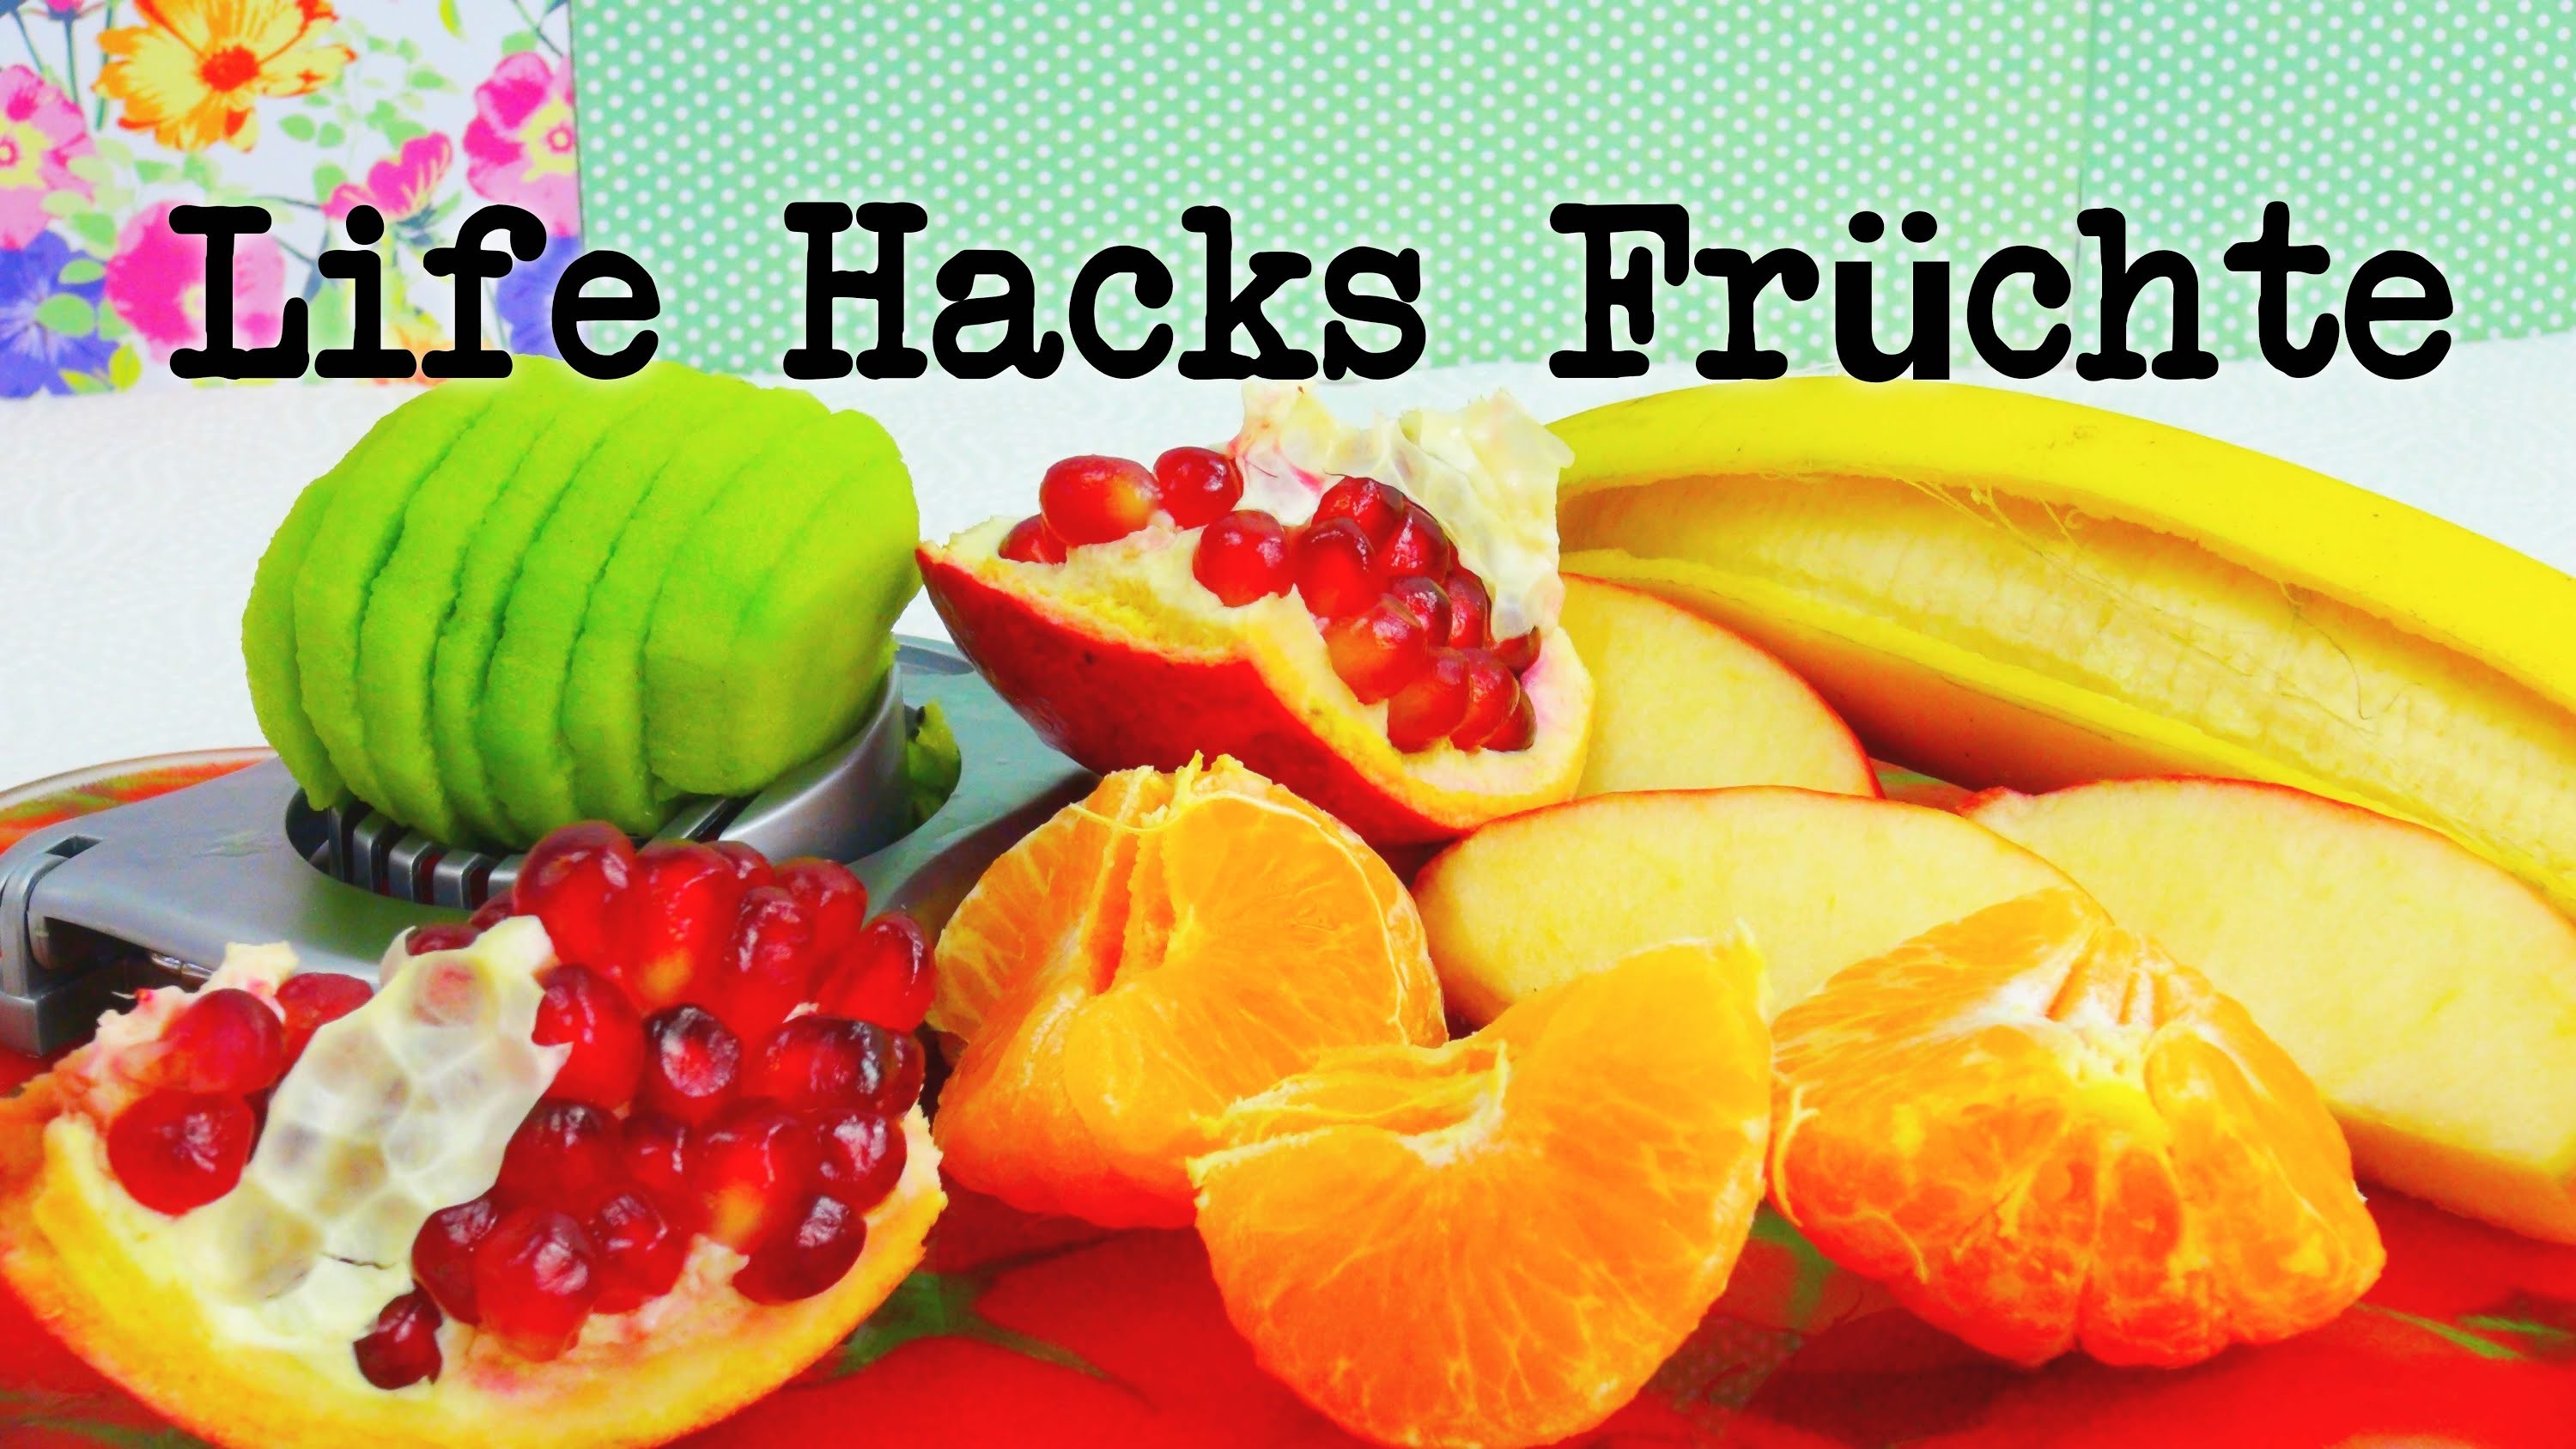 Life Hacks Top 5: Früchte. Obst Tipps und Tricks + Bonustipp! | Life Hacking | deutsch